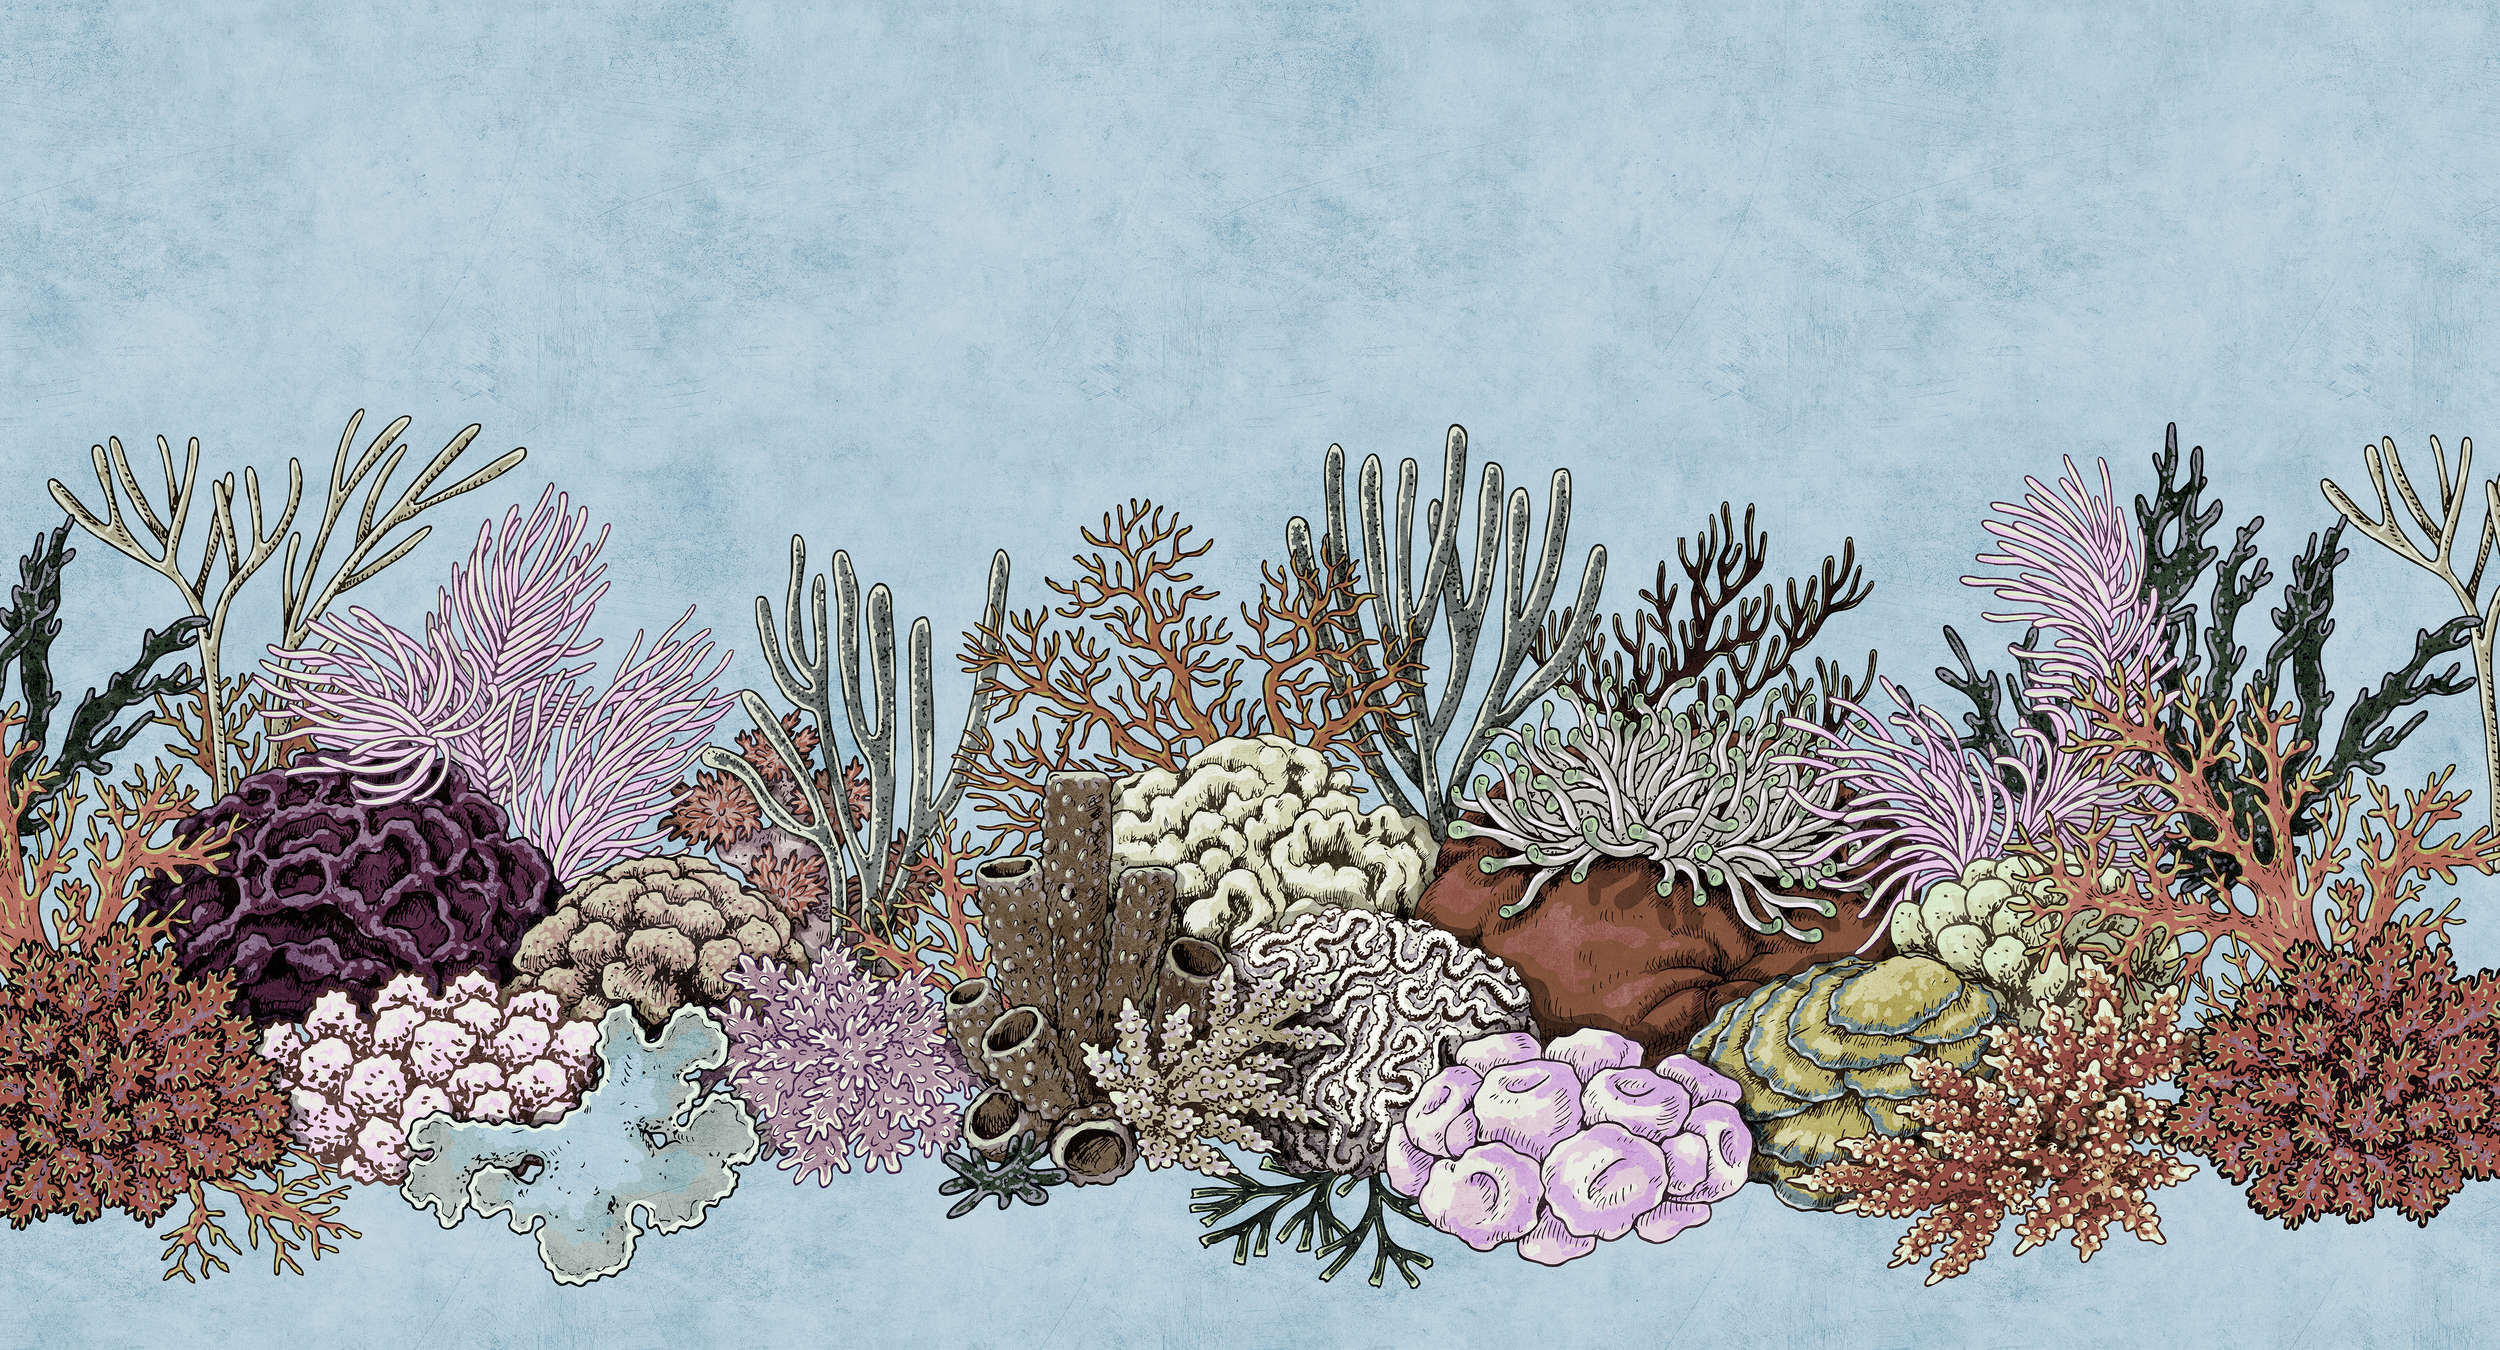             Octopus's Garden 1 - Onderwaterbehang met koralen in vloeipapierstructuur - Blauw, Roze | Mat glad vlies
        